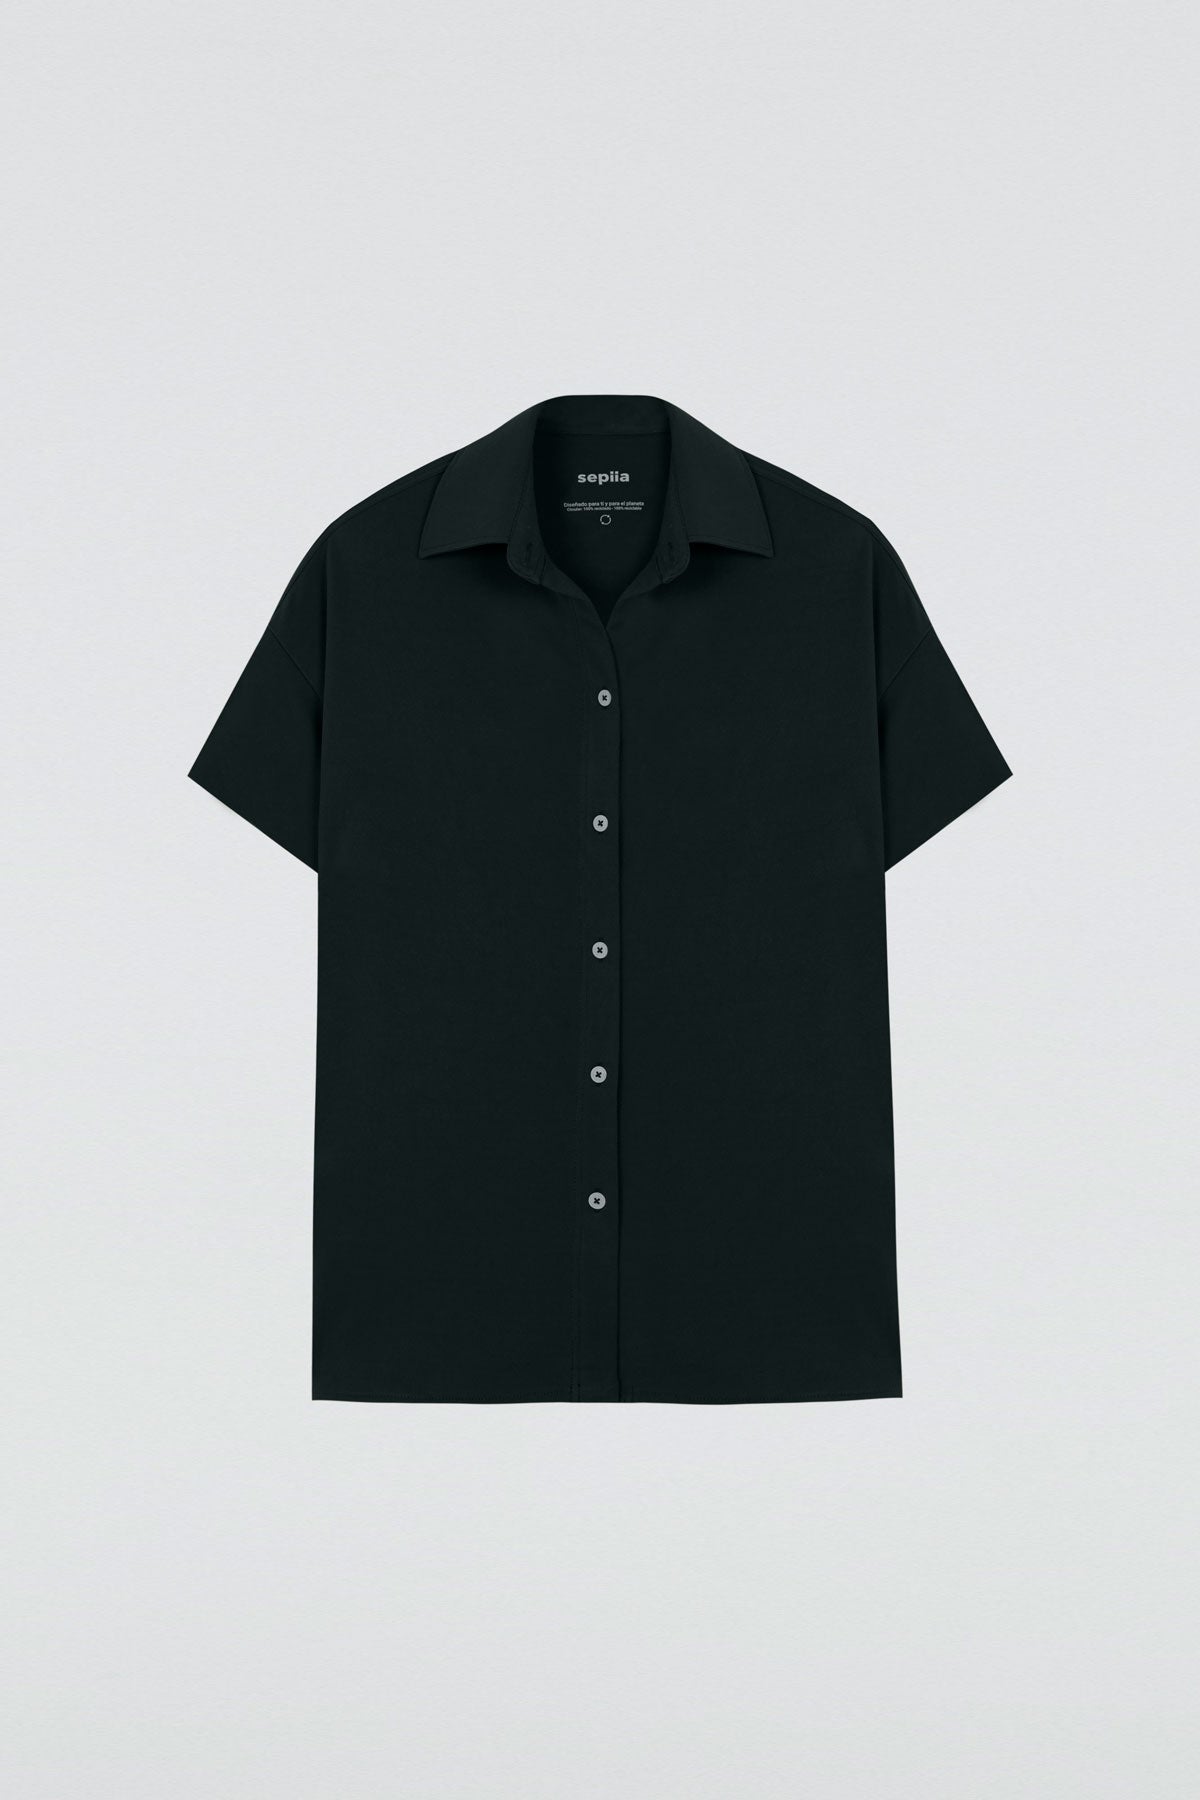 Camisa manga corta mujer negra de Sepiia, estilo y versatilidad en una prenda cómoda y resistente. Foto plano